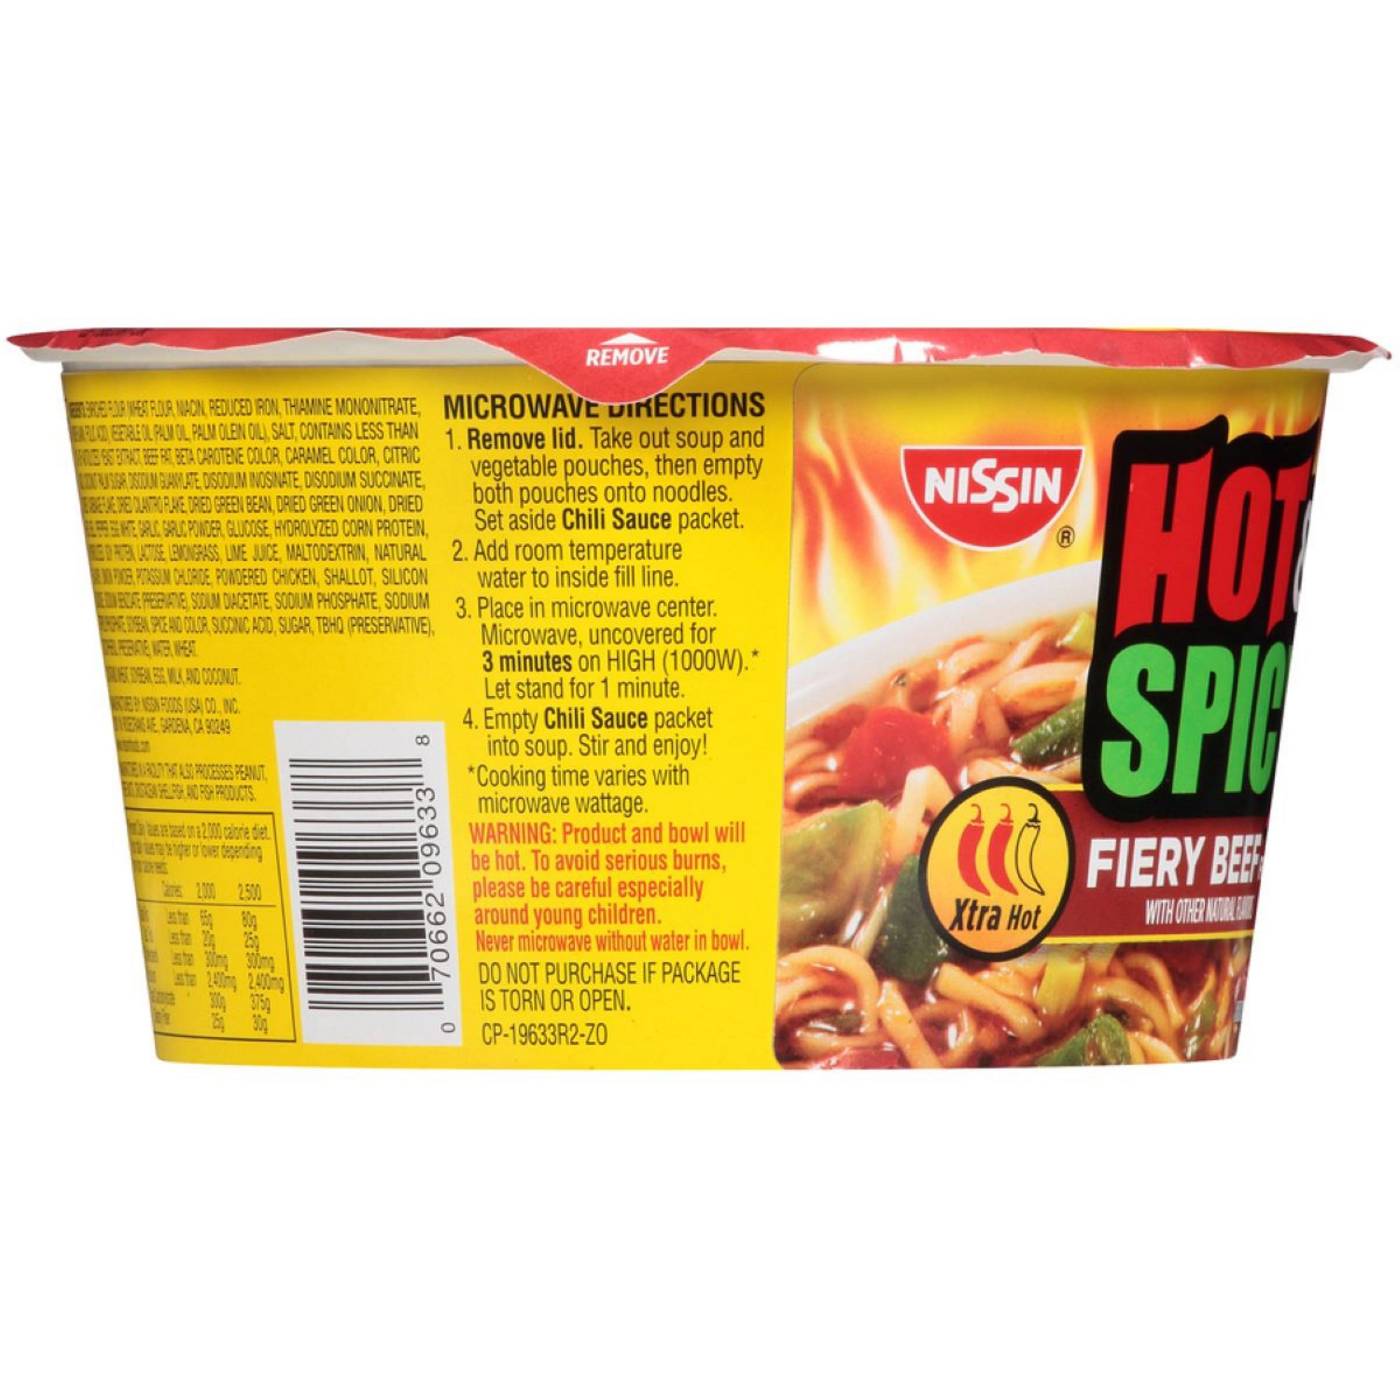 Nissin Hot & Fiery Beef Flavor Ramen Noodle Soup; image 5 of 6